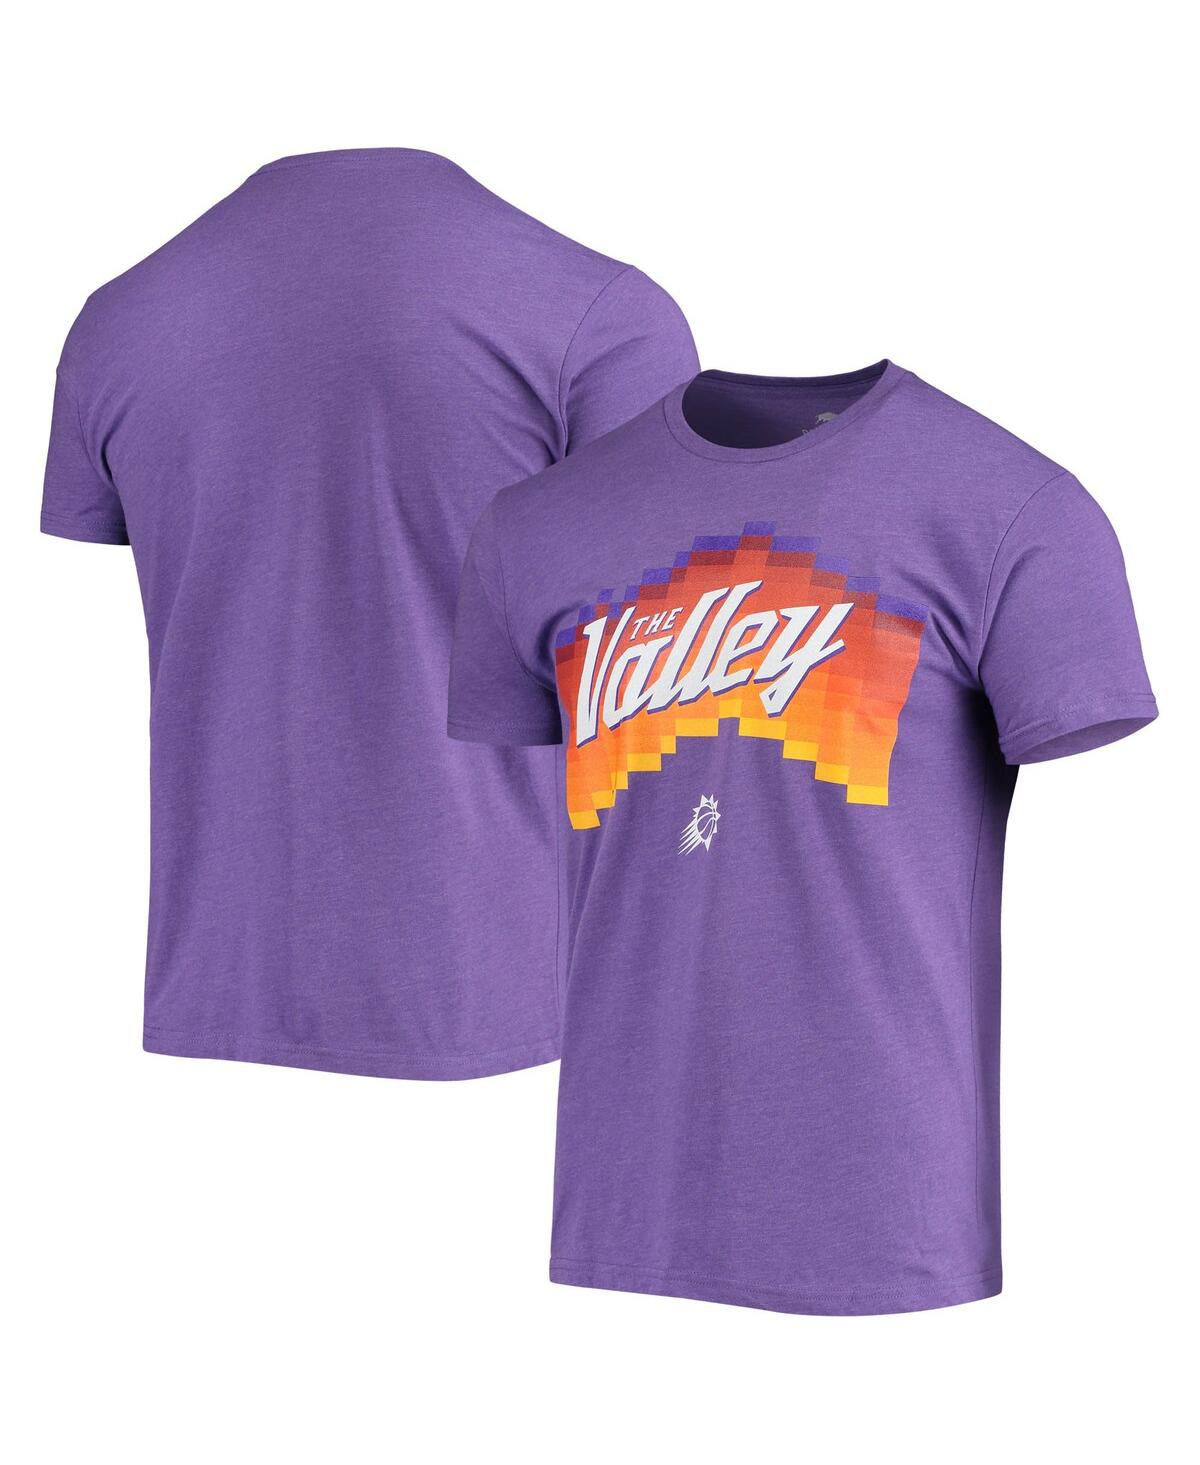 Men's Sportiqe Purple Phoenix Suns The Valley Pixel City Edition Davis T-shirt - Purple